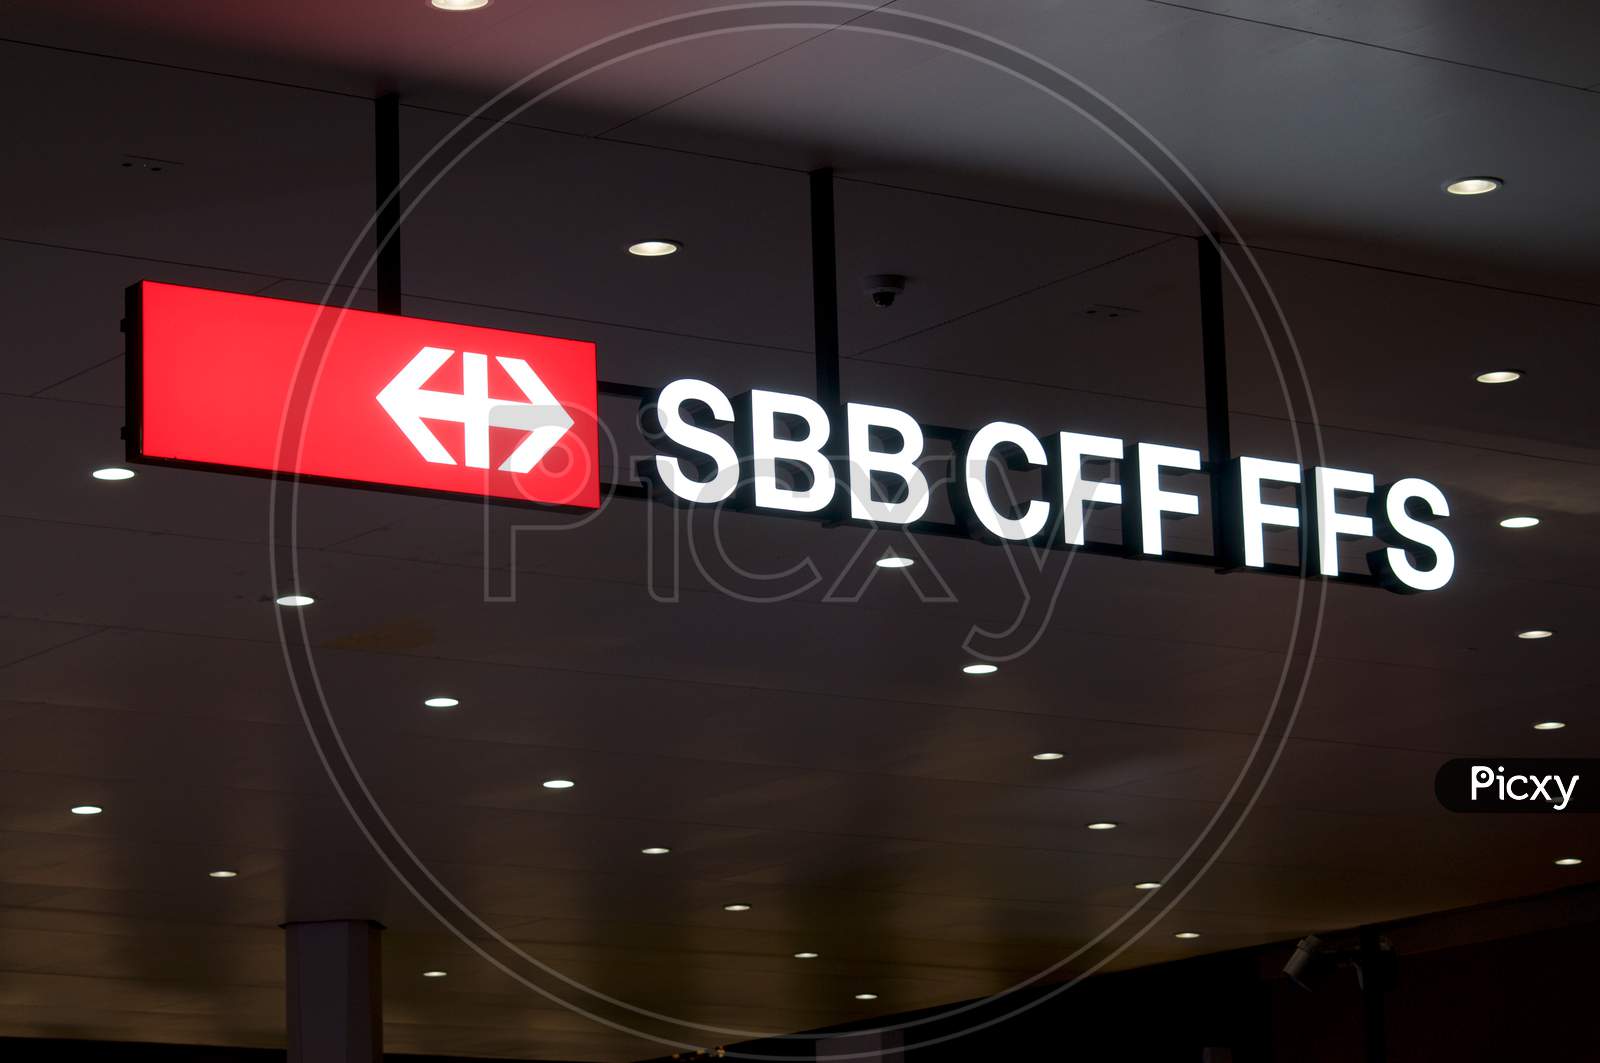 Sbb / Cff / Ffs (Swiss Federal Railways Company) Sign